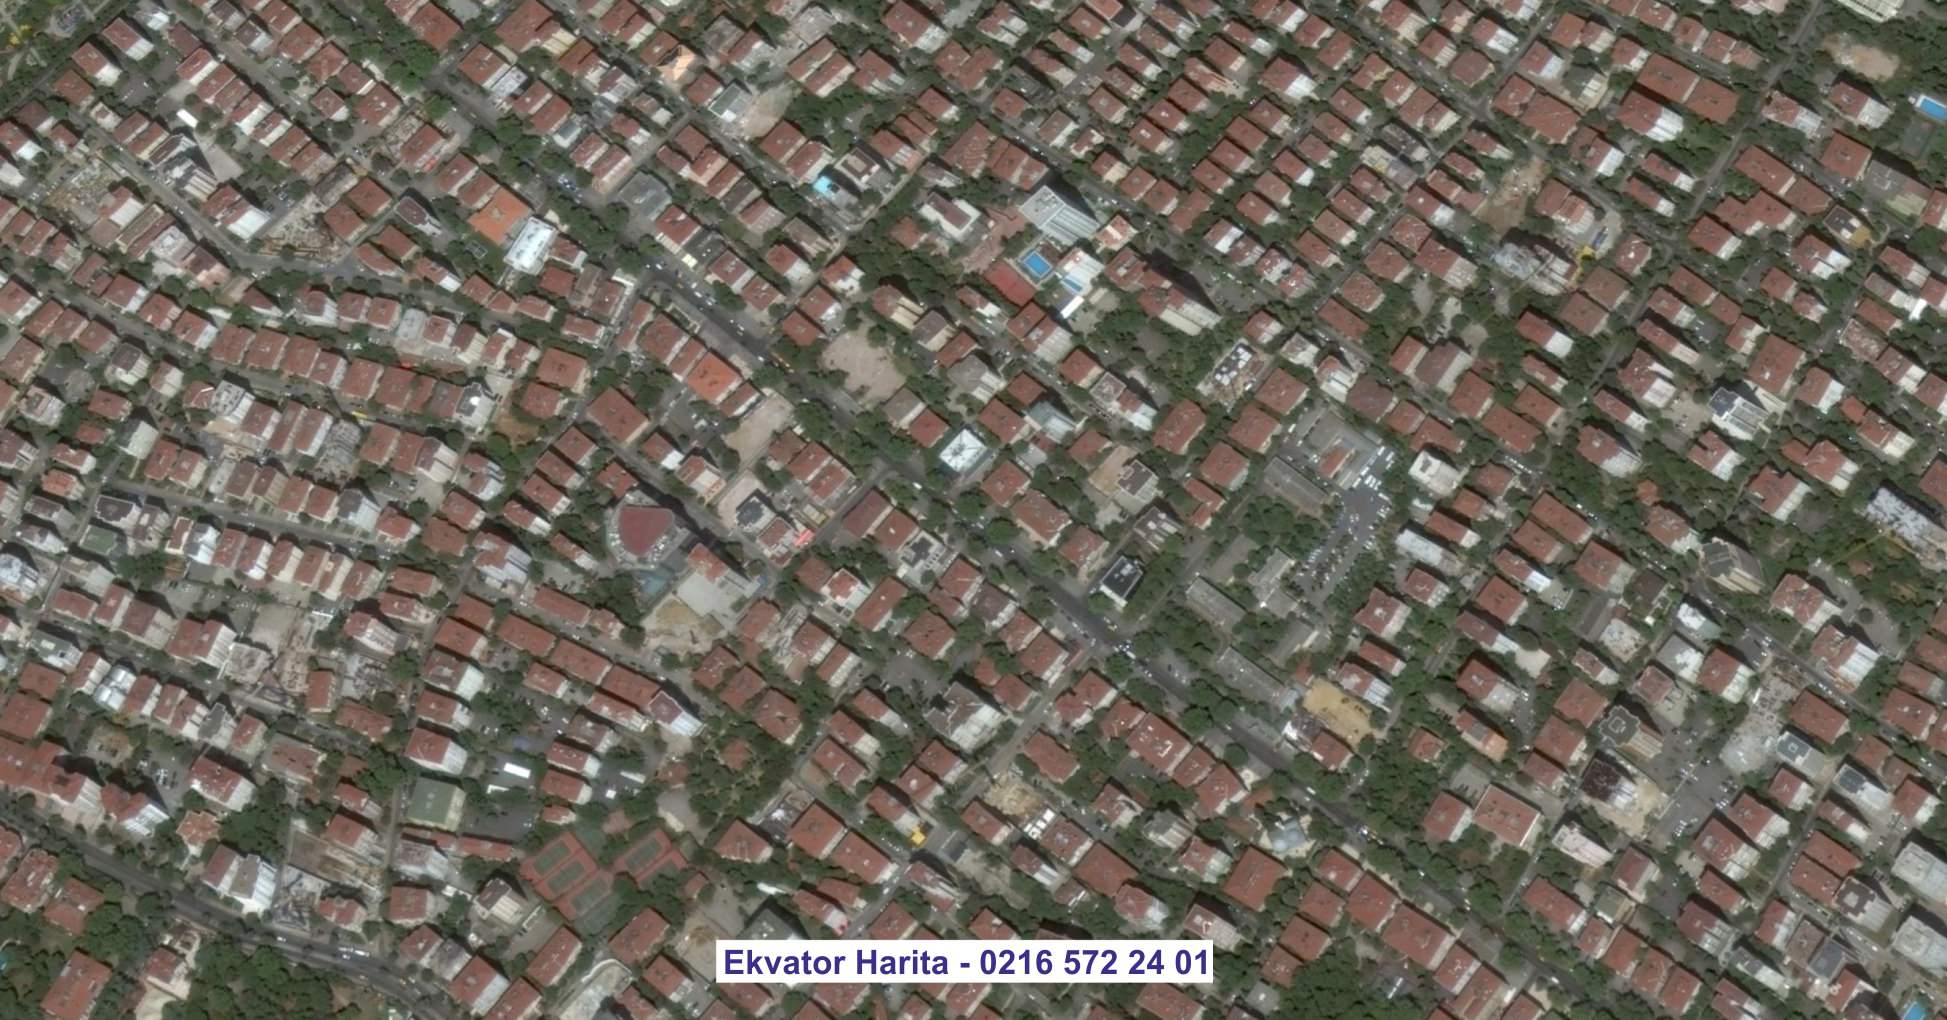 Aksaray Uydu Görüntüsü Örnek Fotoğrafı